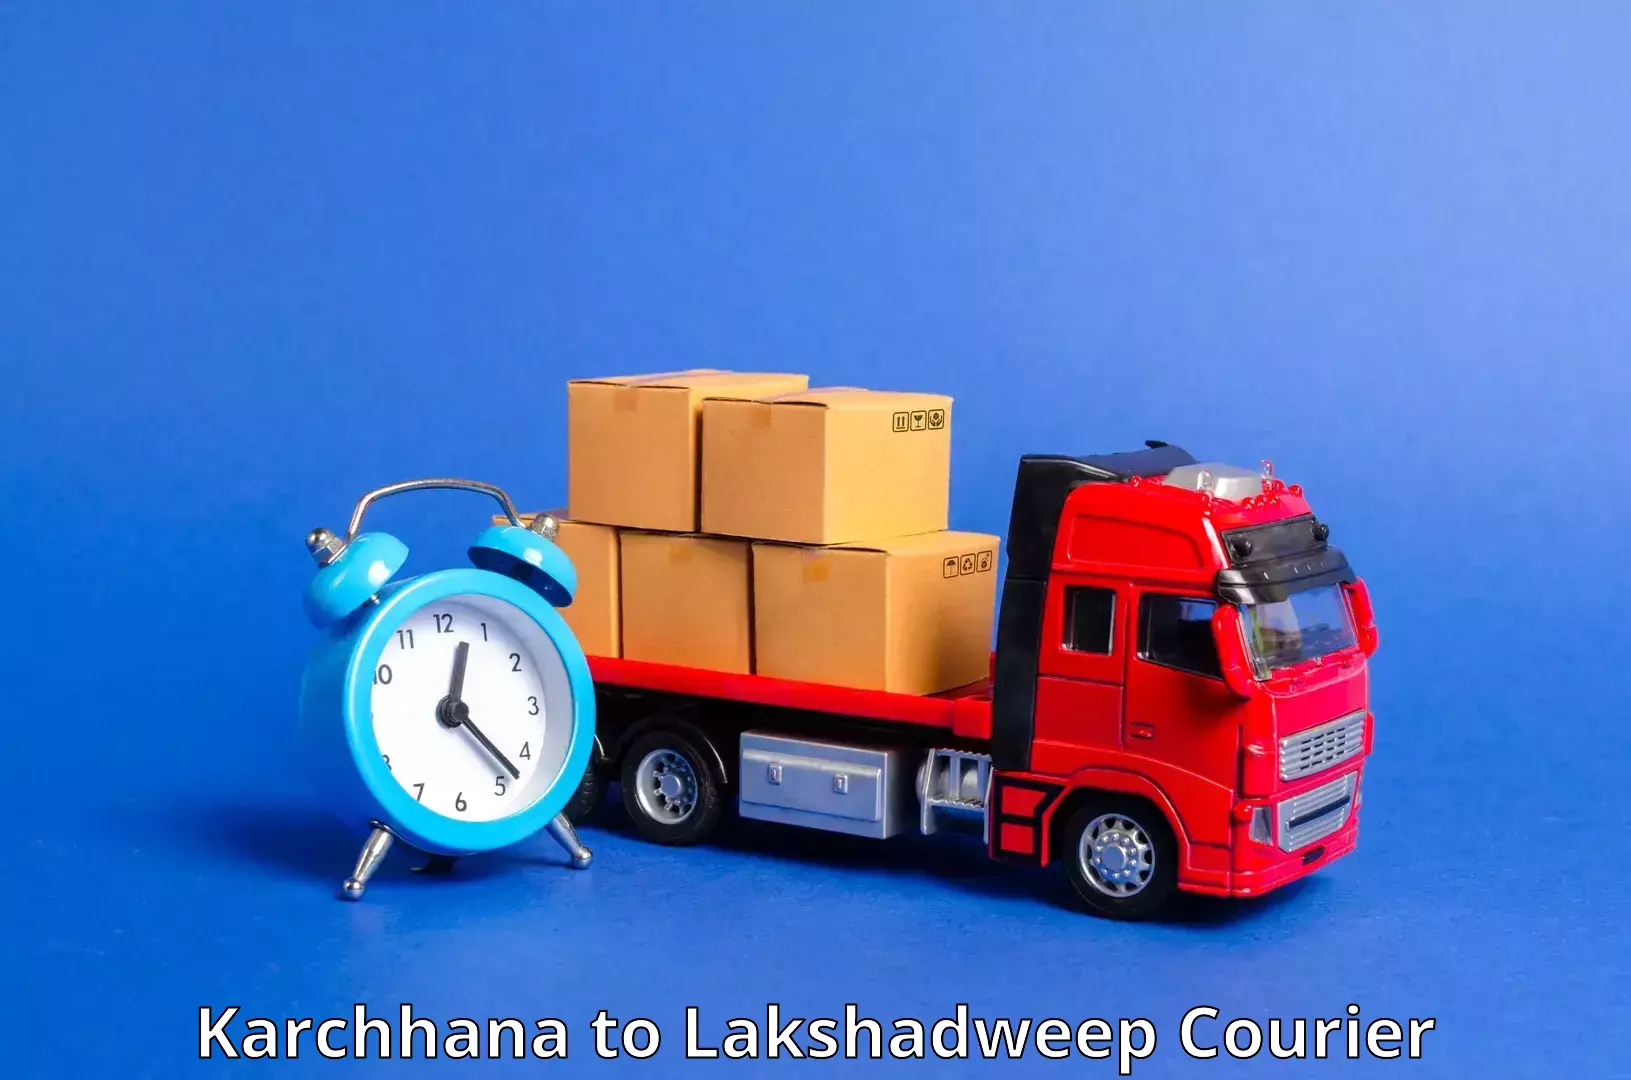 Courier service partnerships Karchhana to Lakshadweep